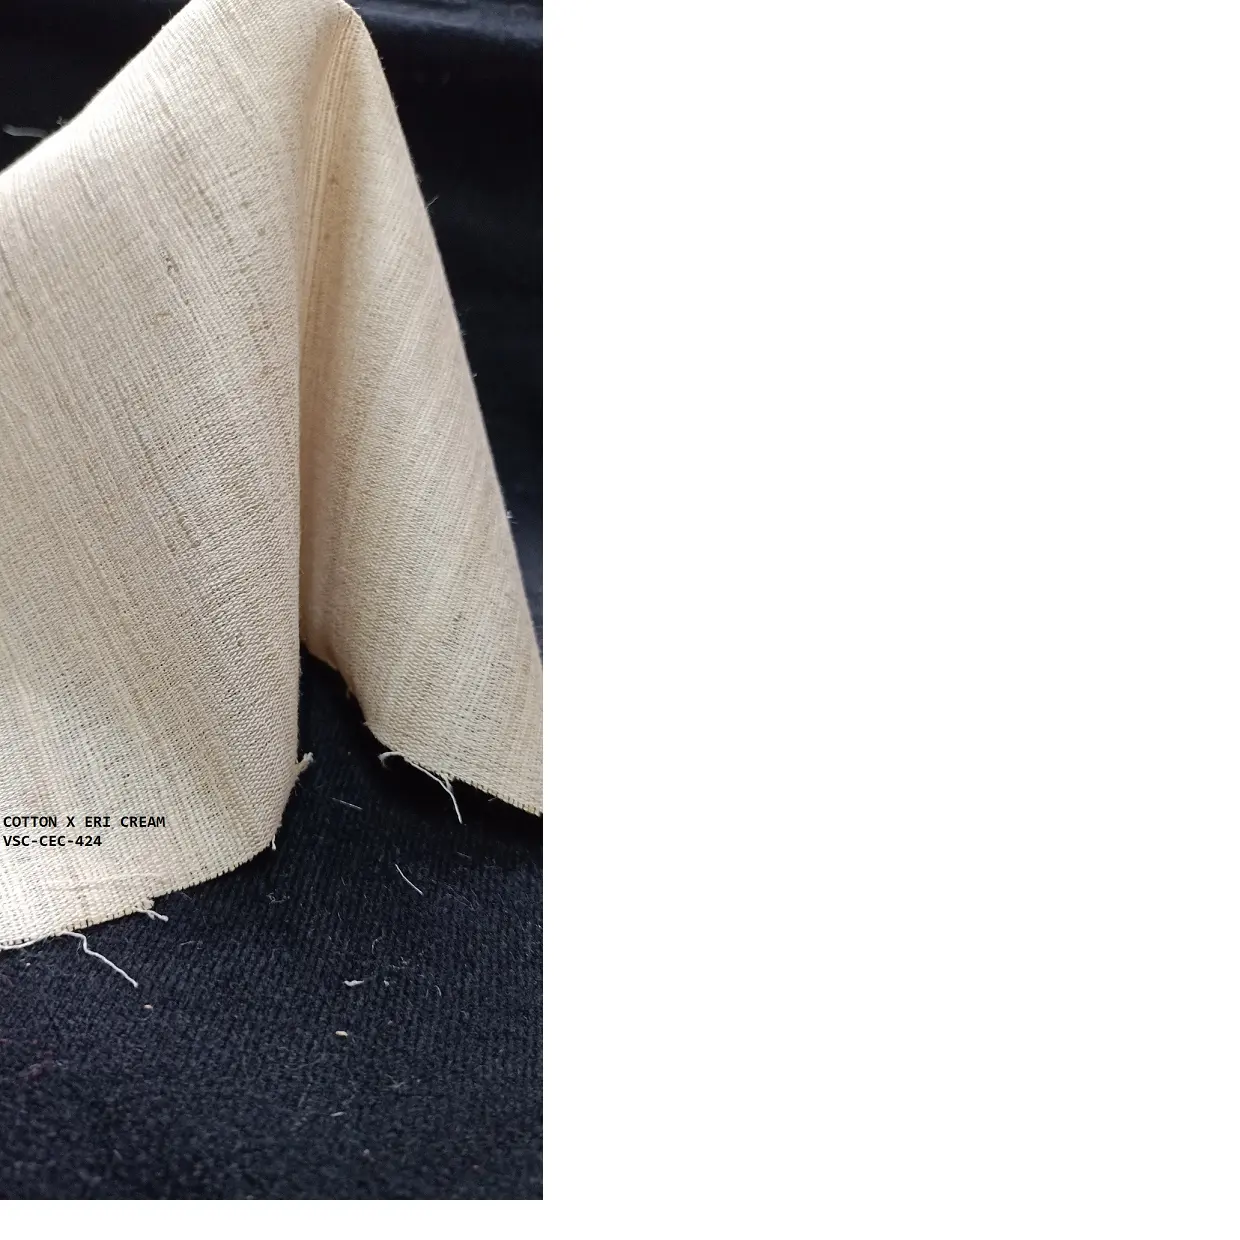 ผ้าพันคอผ้าไหมบริสุทธิ์ทำในขนาดที่กำหนดเองเหมาะสำหรับใช้โดย Dyers และจิตรกร